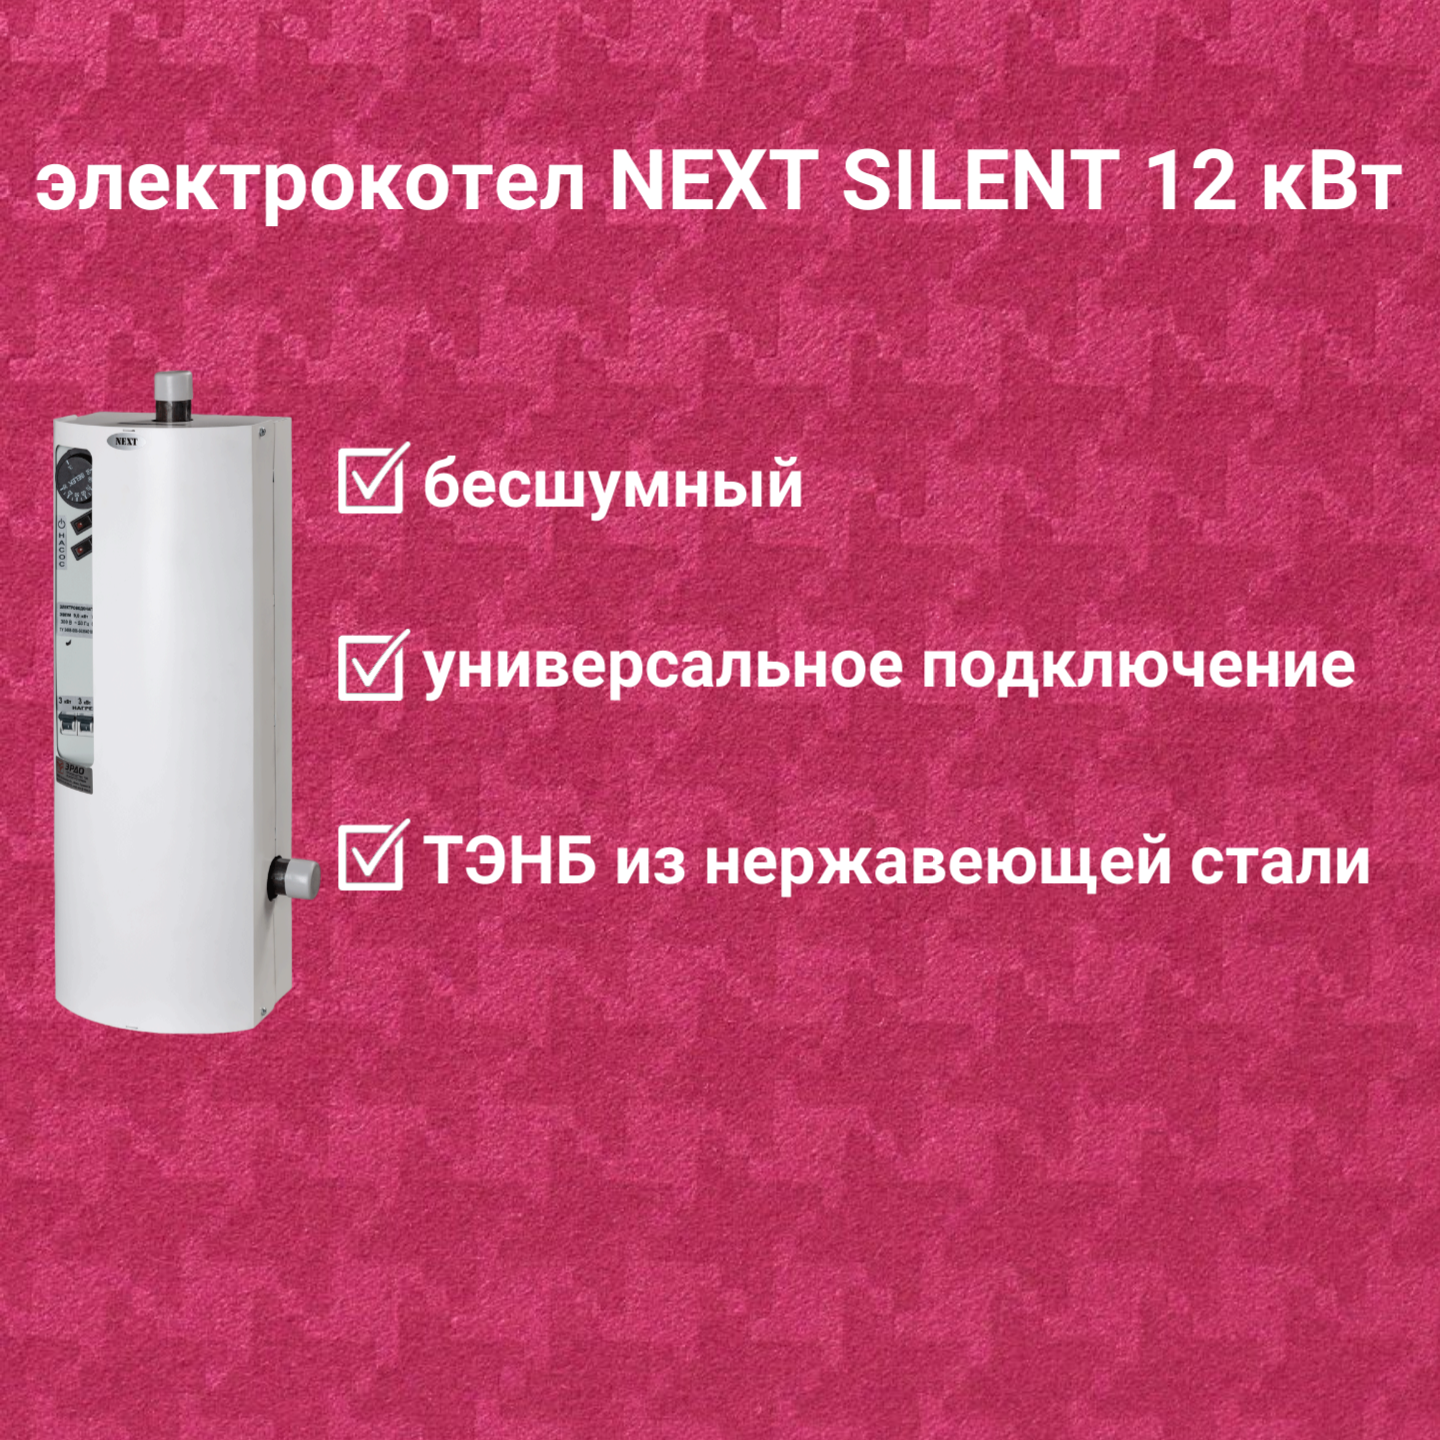 Электрокотел ЭРДО ЭВПМ-NEXT-SILENT 12 кВт с GSM модулем в комплекте купить по цене 17 950 руб.